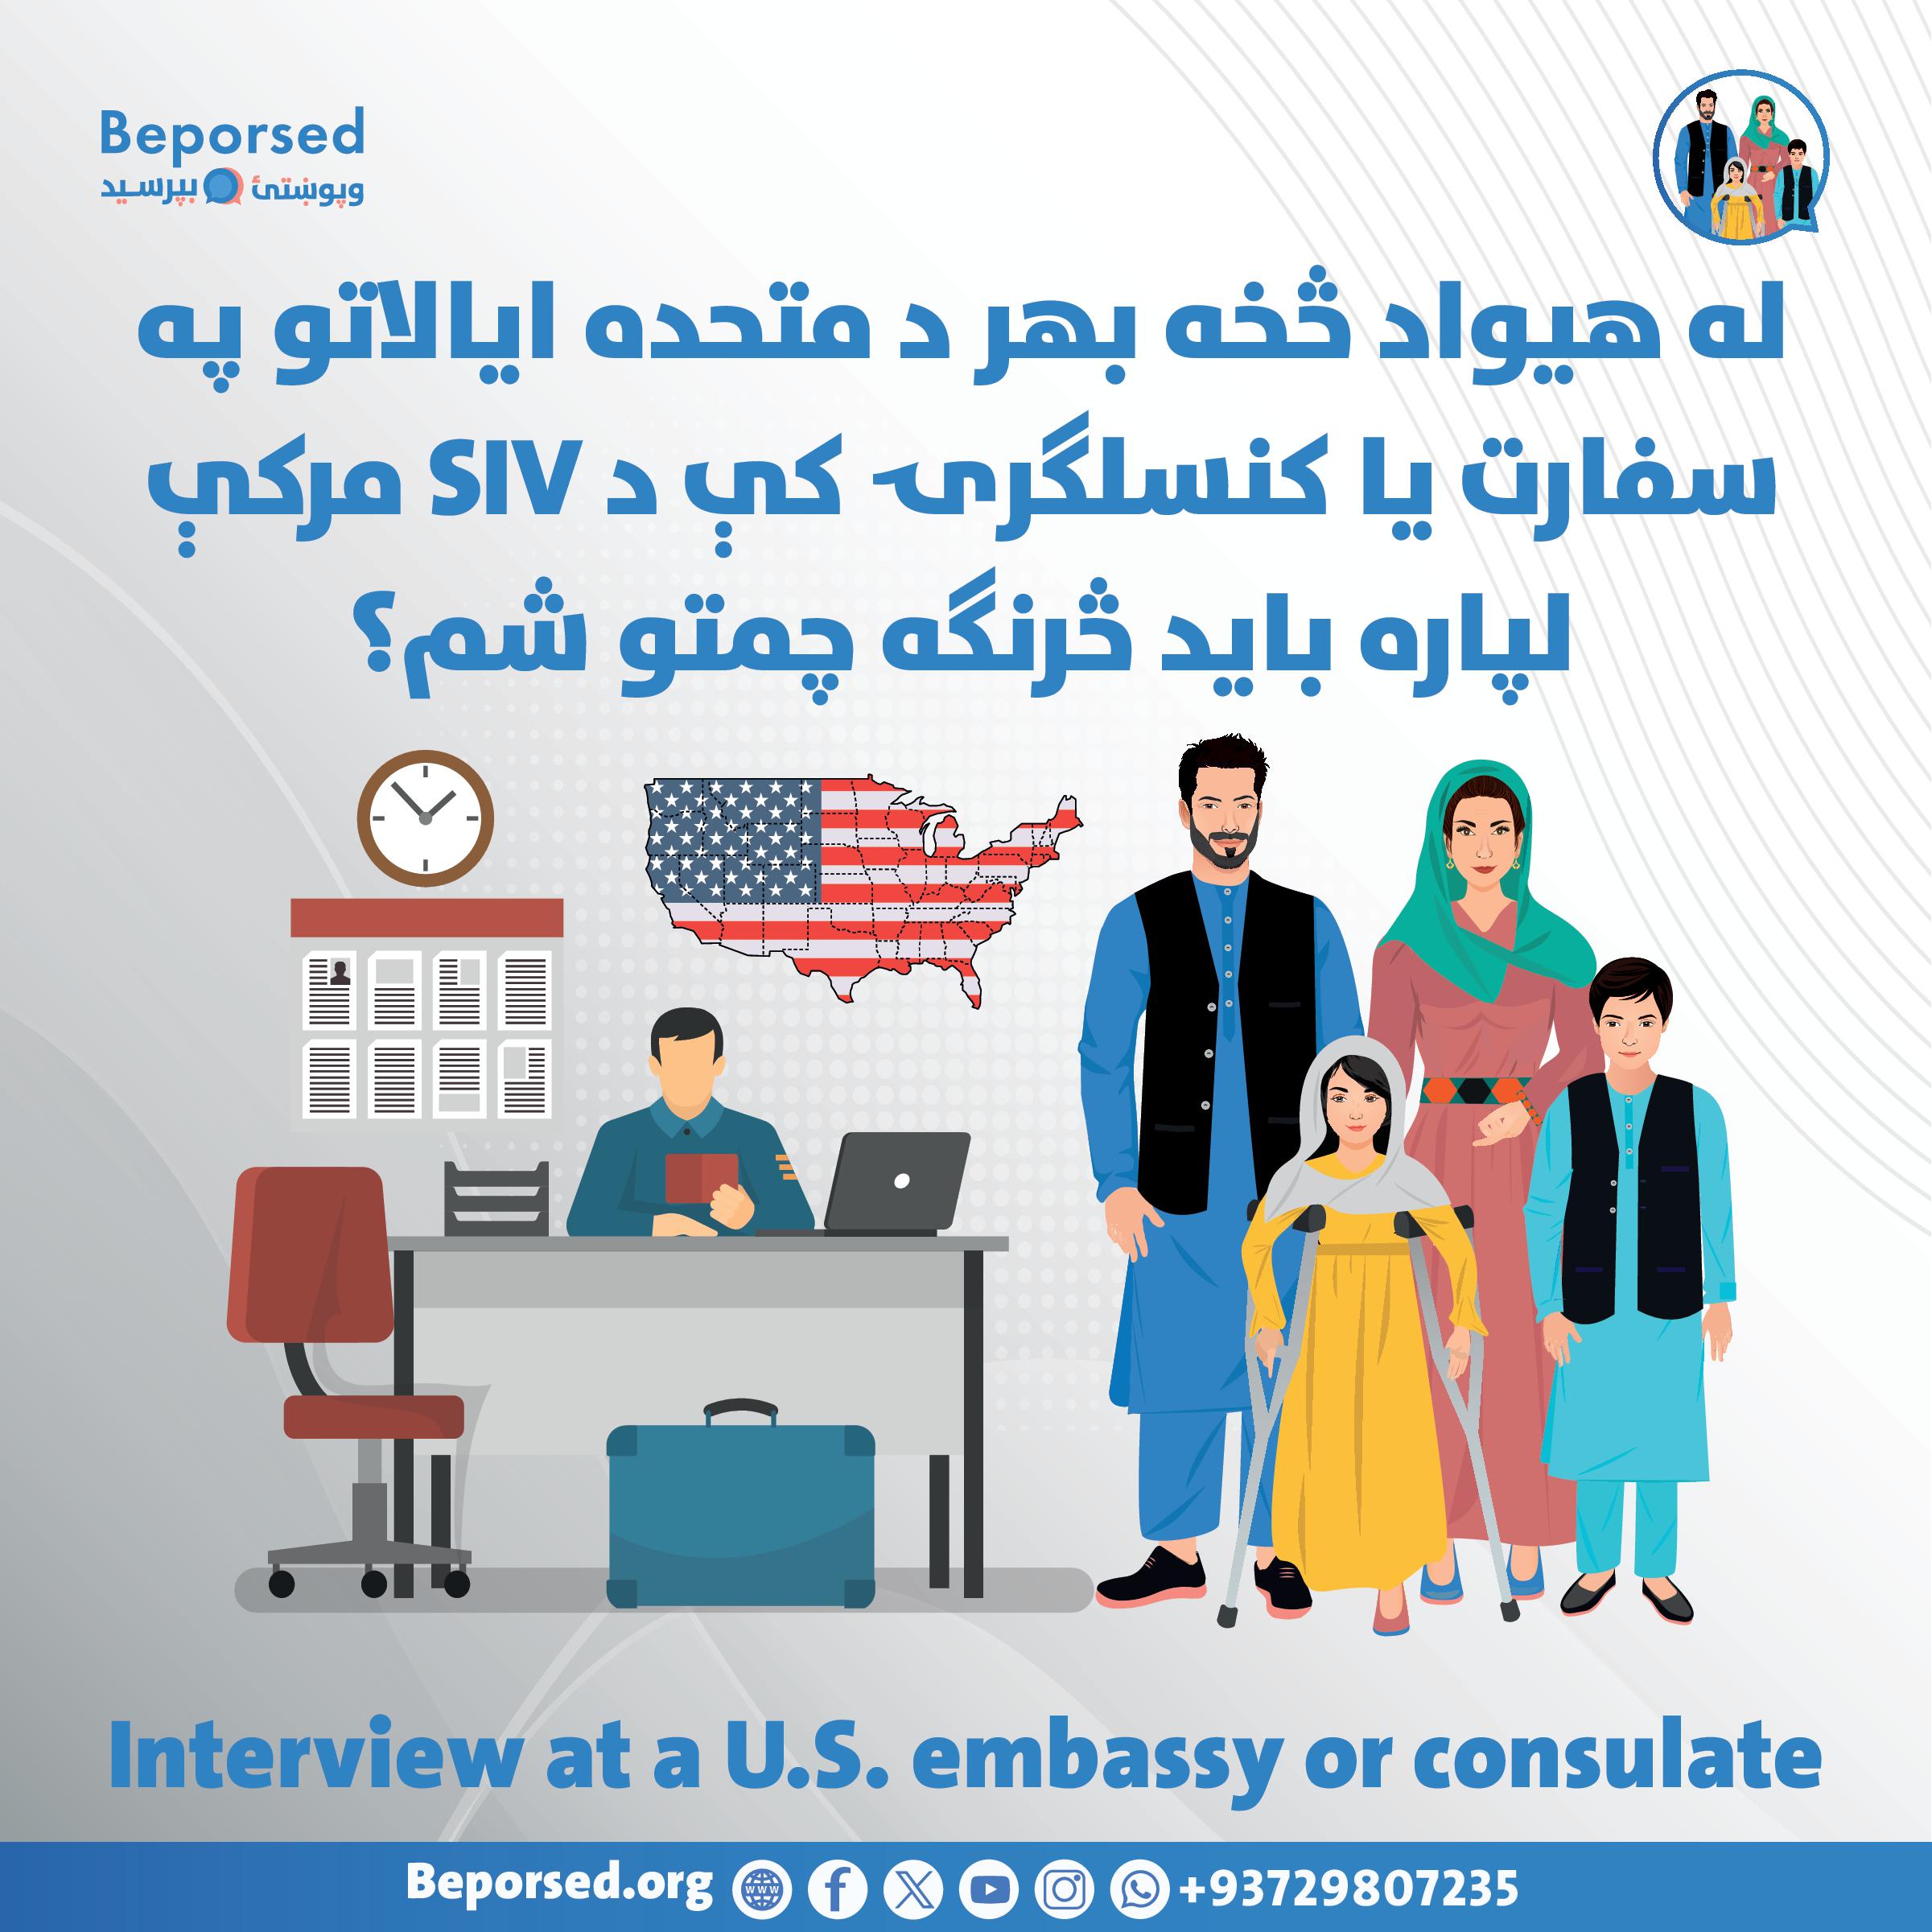 برای مصاحبه SIV در سفارت یا کنسلگری ایالات متحده در خارج از کشور چگونه باید آمادگی بگیرم؟-002.jpg